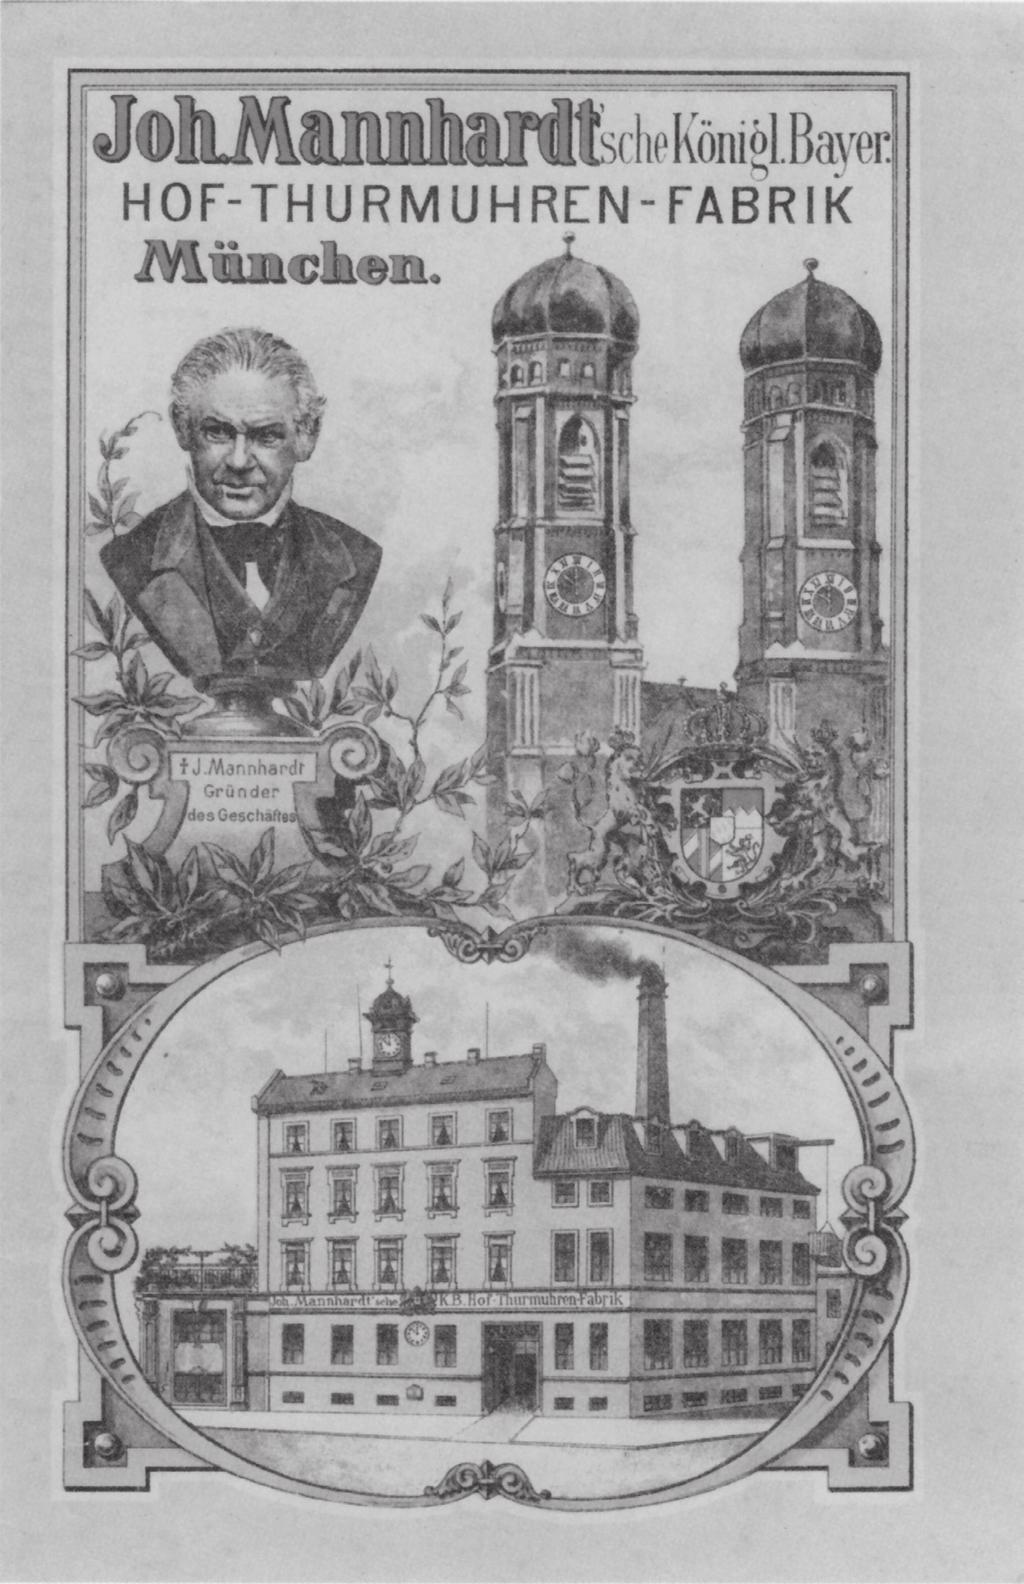 Aan de hand van deze folder bestelde de gemeente Immenstaad in 1893 het torenuurwerk nr.